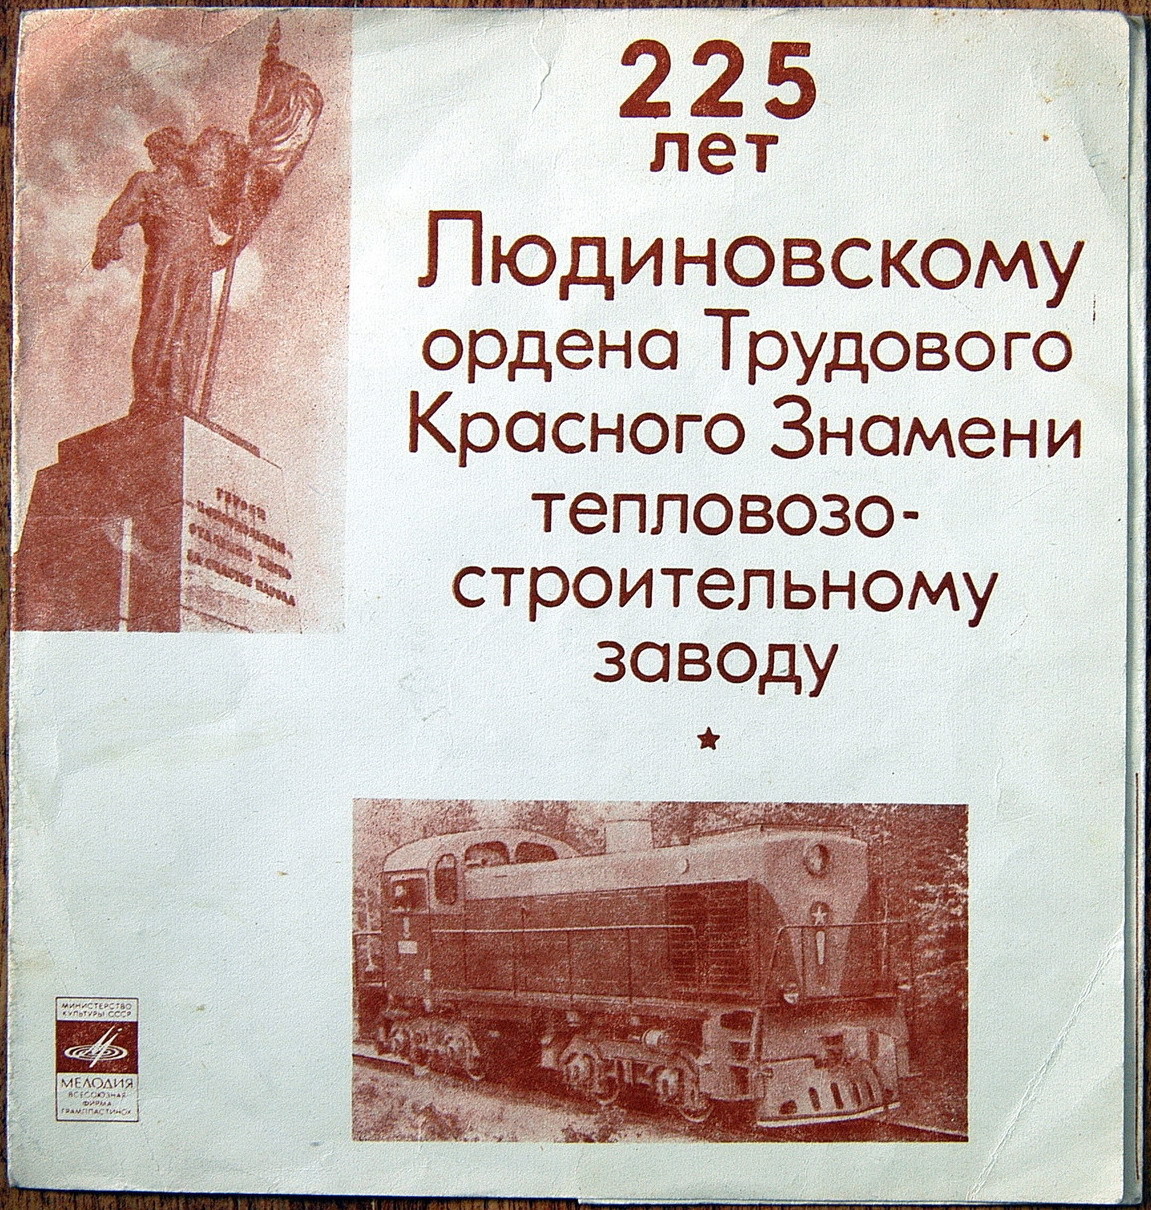 225 лет Людиновскому ордена Трудового Красного Знамени тепловозостроительному заводу